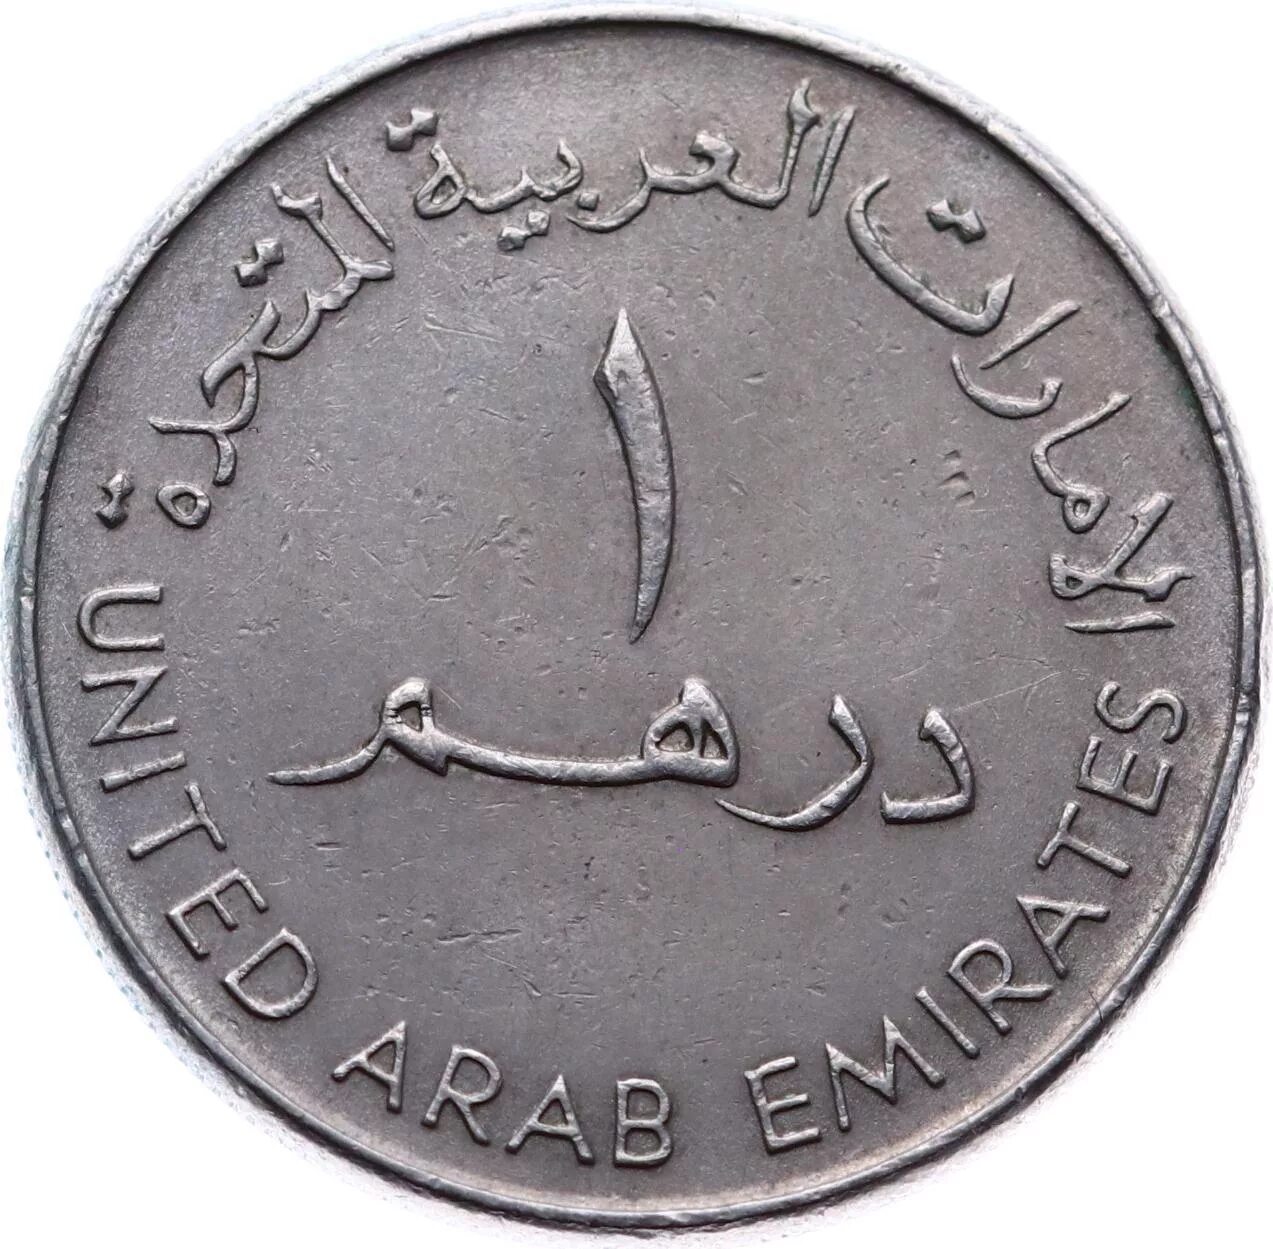 180 000 000 дирхам в рубли. Монета United arab Emirates 2007 1428. Arab Emirates монета. United arab Emirates монета 1. Монета United arab Emirates 1993-1998.